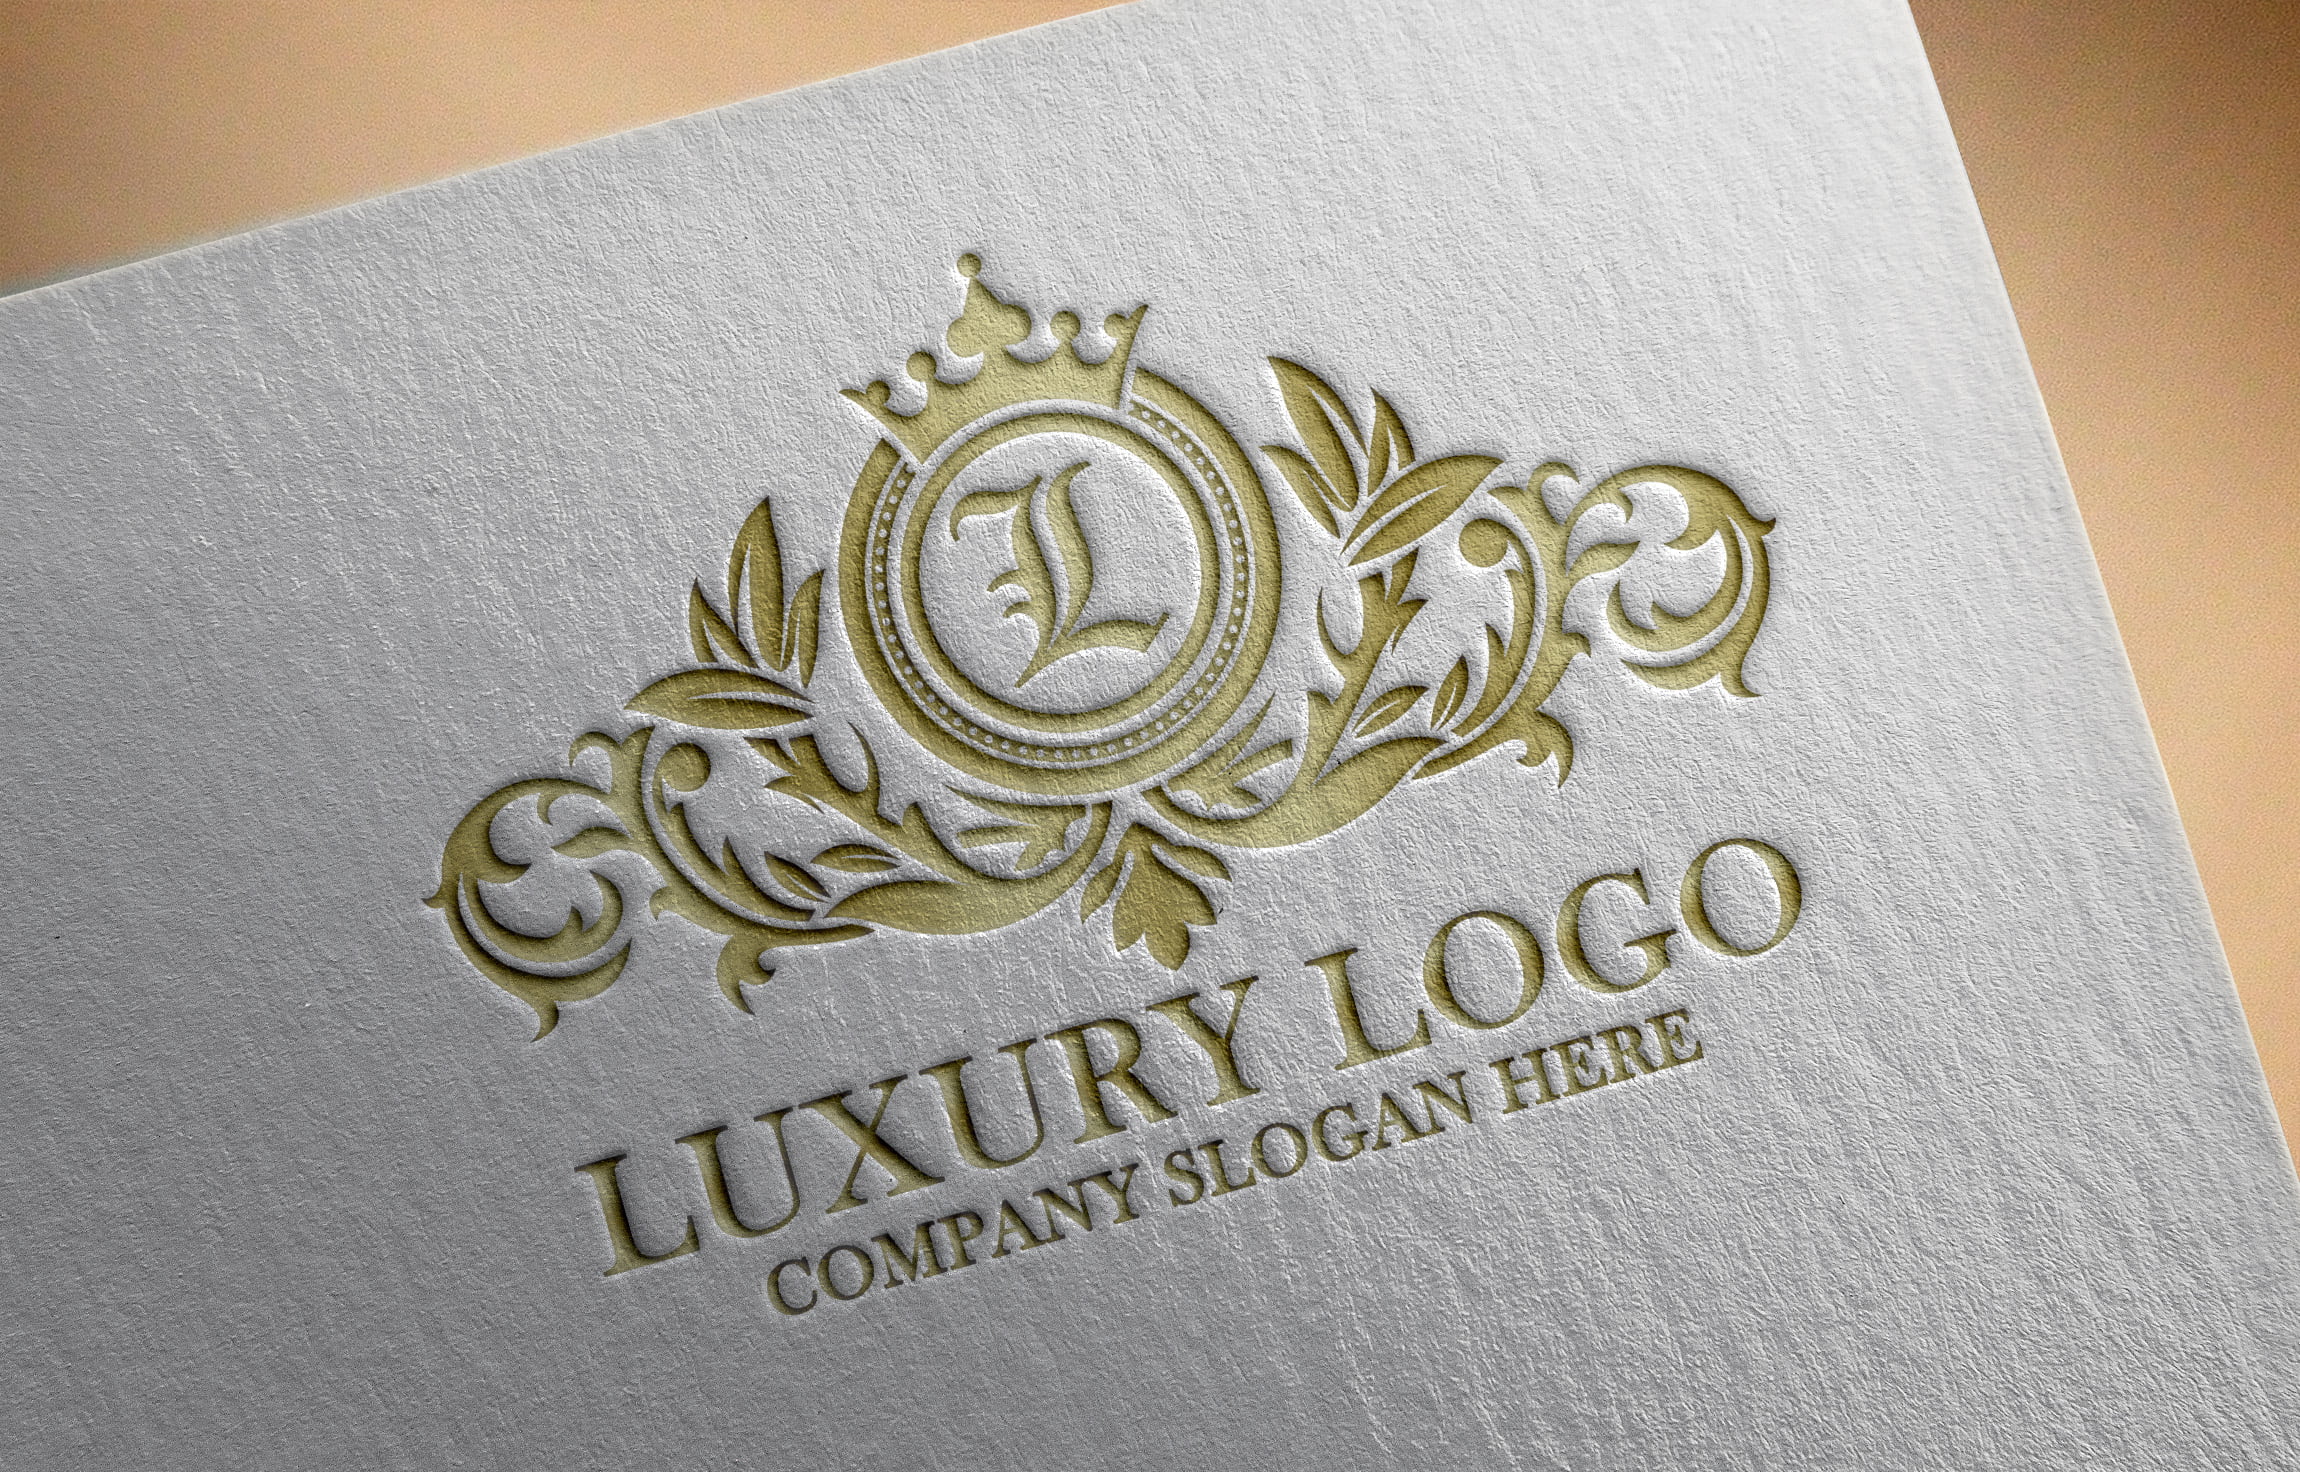 professional logo maker online